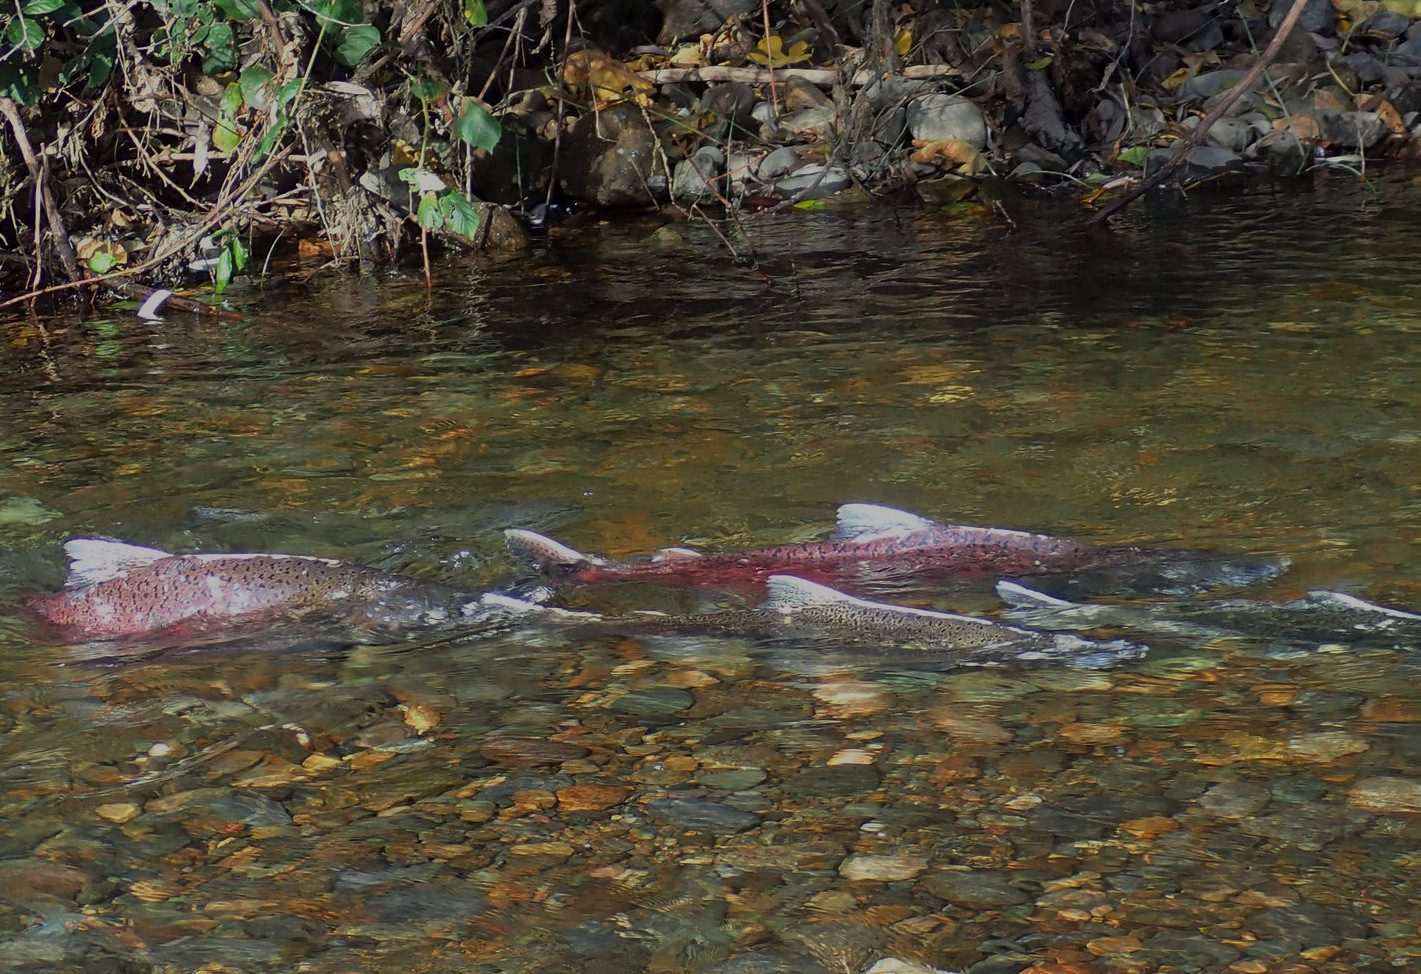 Fall-Run Chinook Salmon